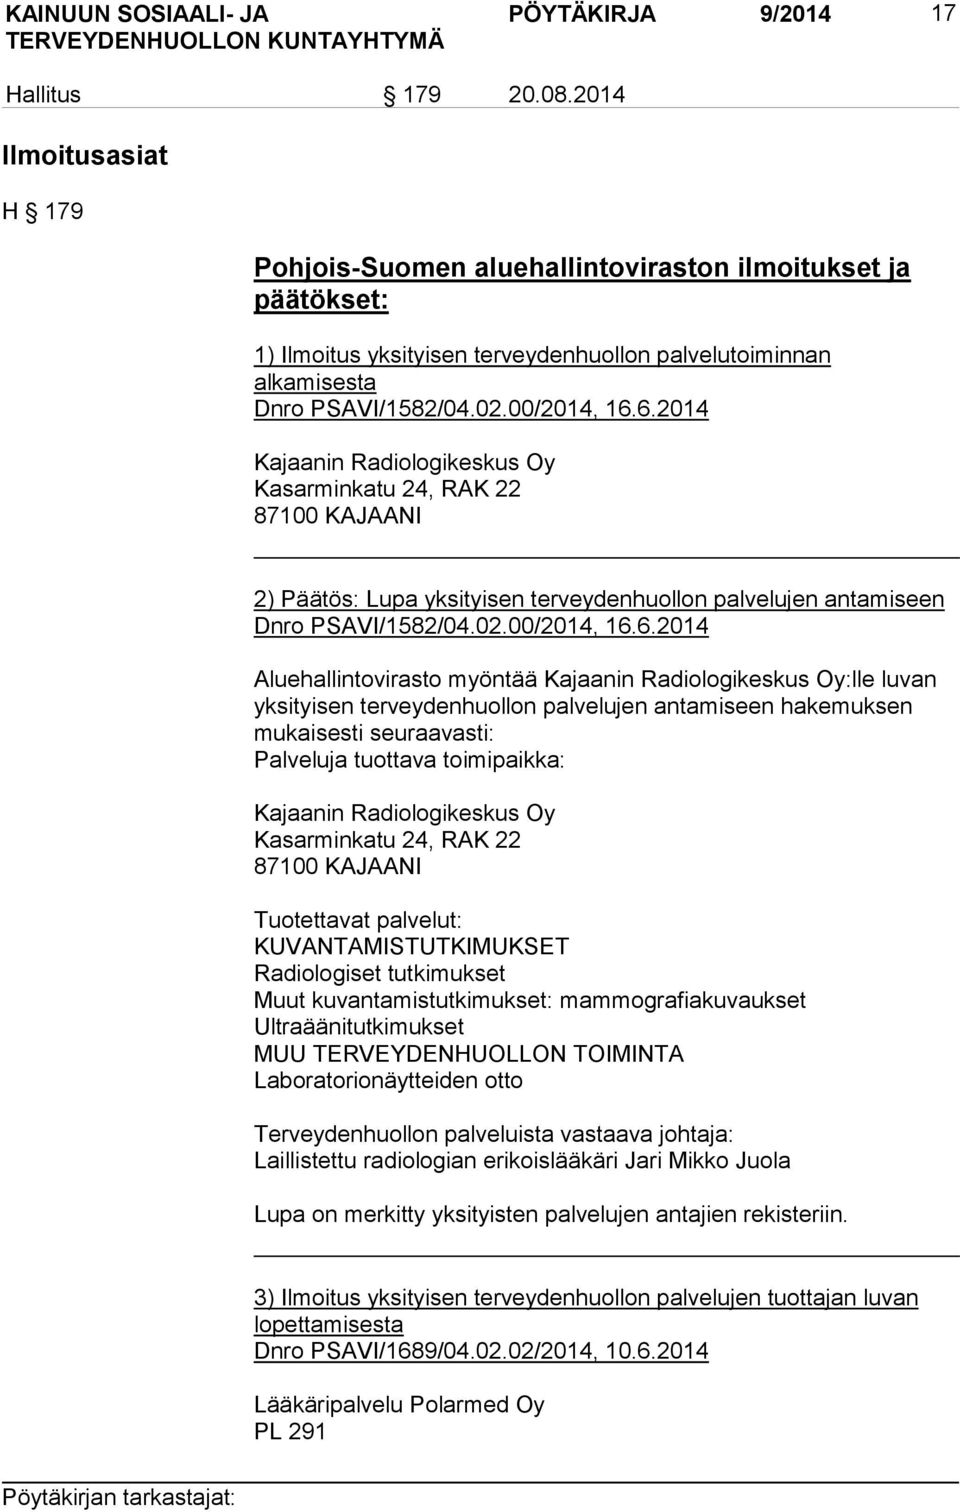 6.2014 Kajaanin Radiologikeskus Oy Kasarminkatu 24, RAK 22 87100 KAJAANI 2) Päätös: Lupa yksityisen terveydenhuollon palvelujen antamiseen Dnro PSAVI/1582/04.02.00/2014, 16.6.2014 Aluehallintovirasto